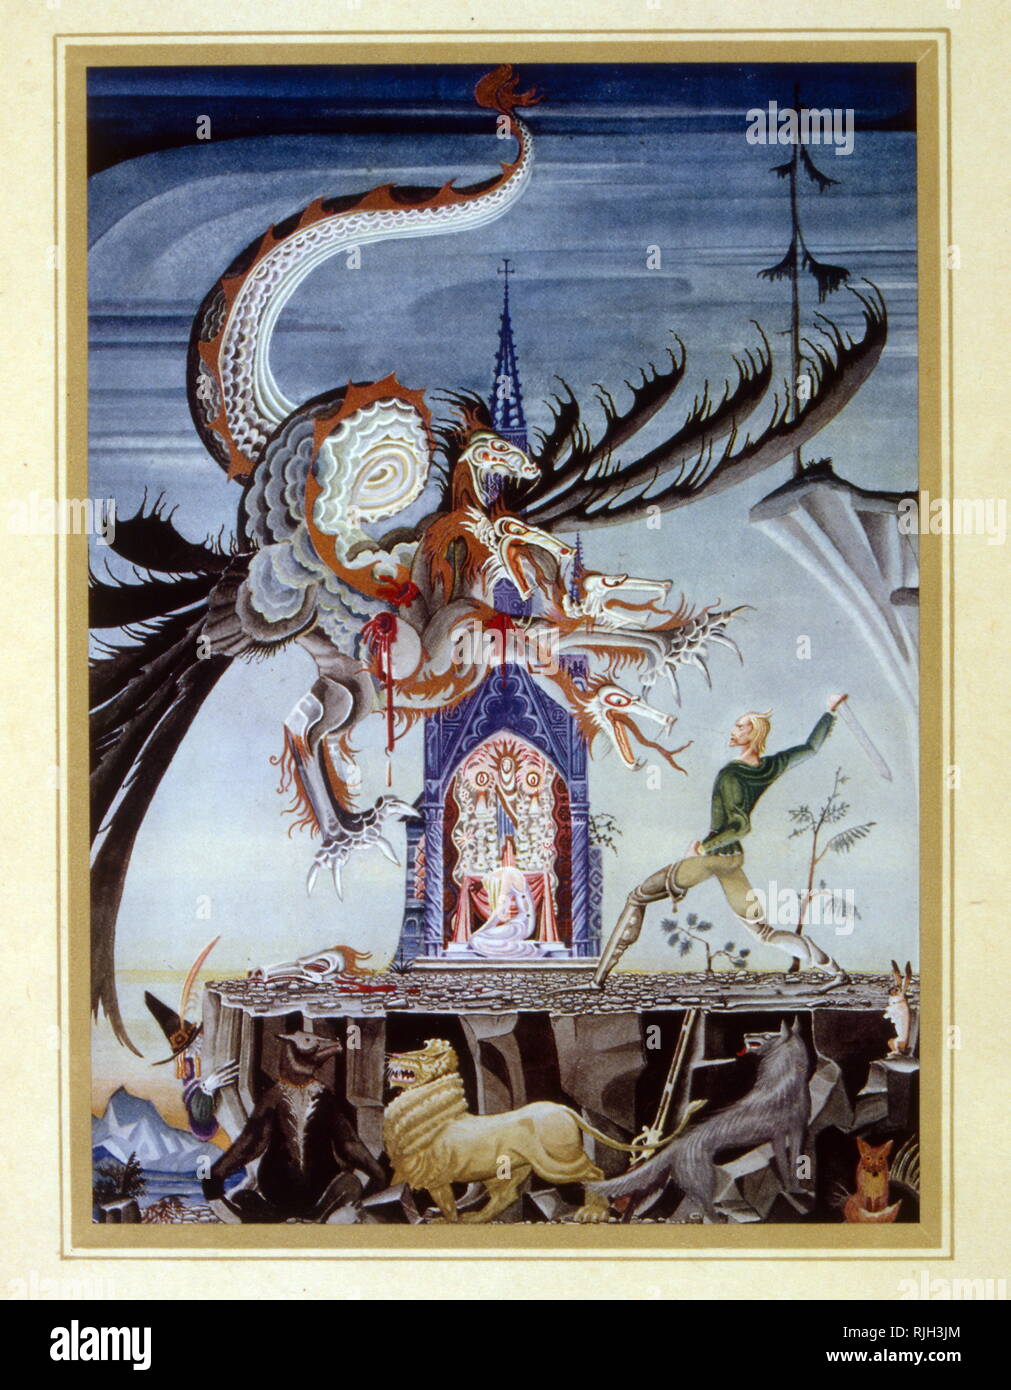 Die Seven-Headed Drachen, Märchen von Jacob und Wilhelm Grimm. Illustration von Kay Nielsen, 1925 Stockfoto